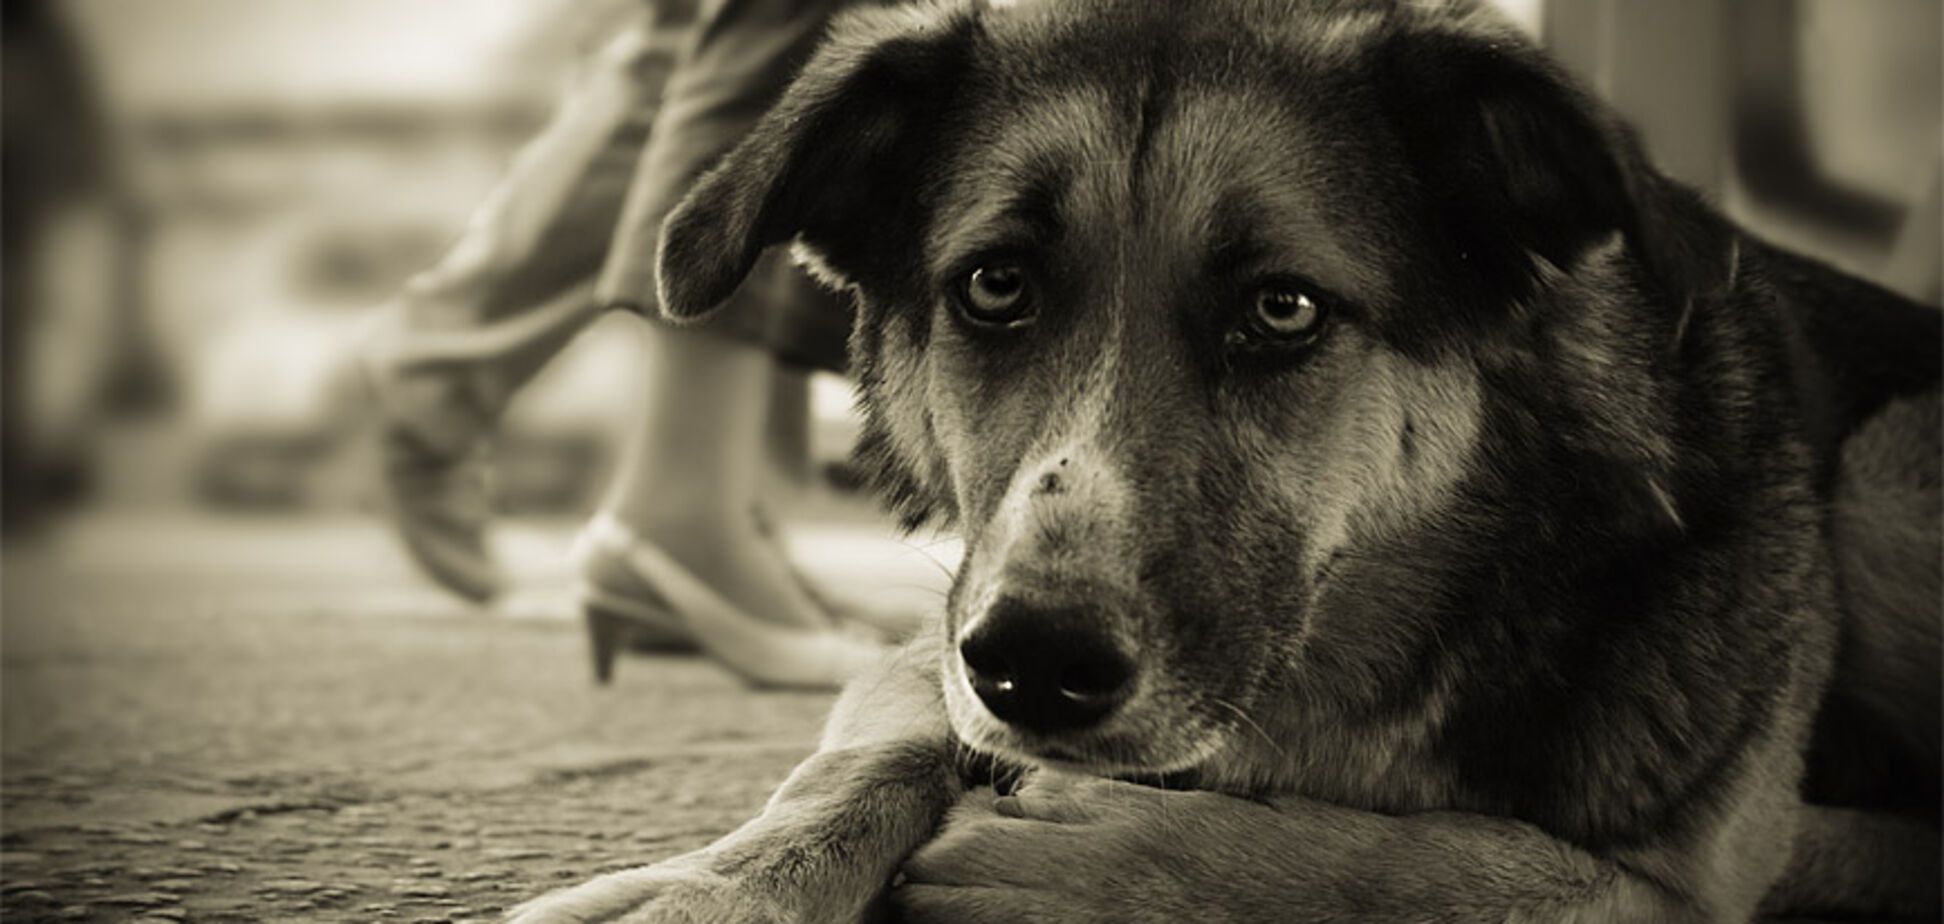 Съел больше 20 собак: стало известно о жутких преступлениях живодера на Черкасщине